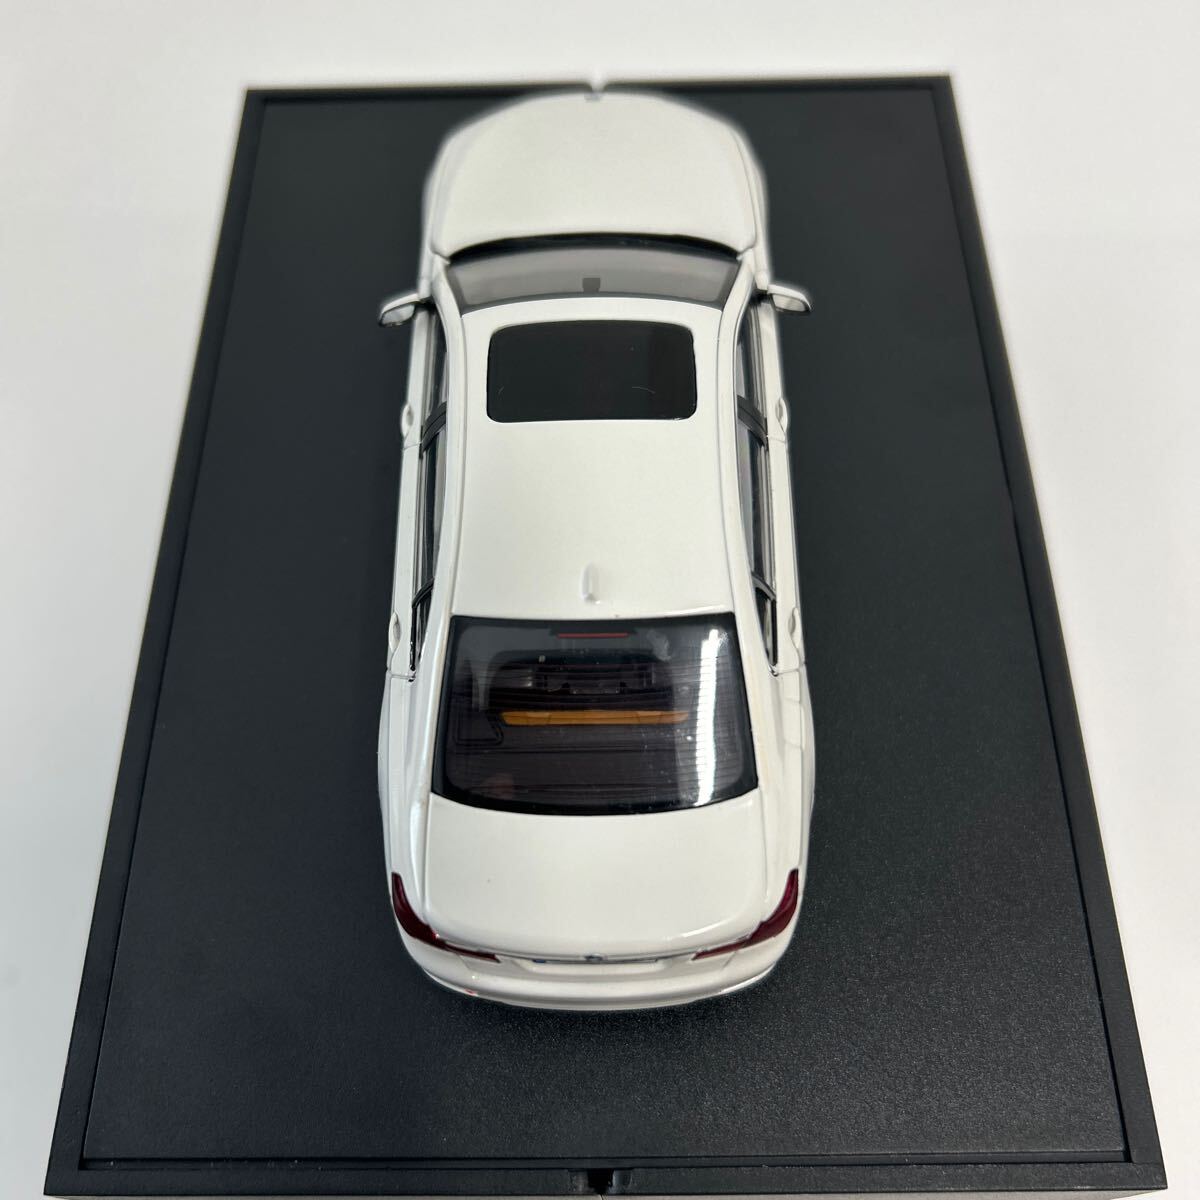 BMW дилер специальный заказ PMA 1/43 750Li F02 MINICHAMPS 7 серии белый миникар модель машина 